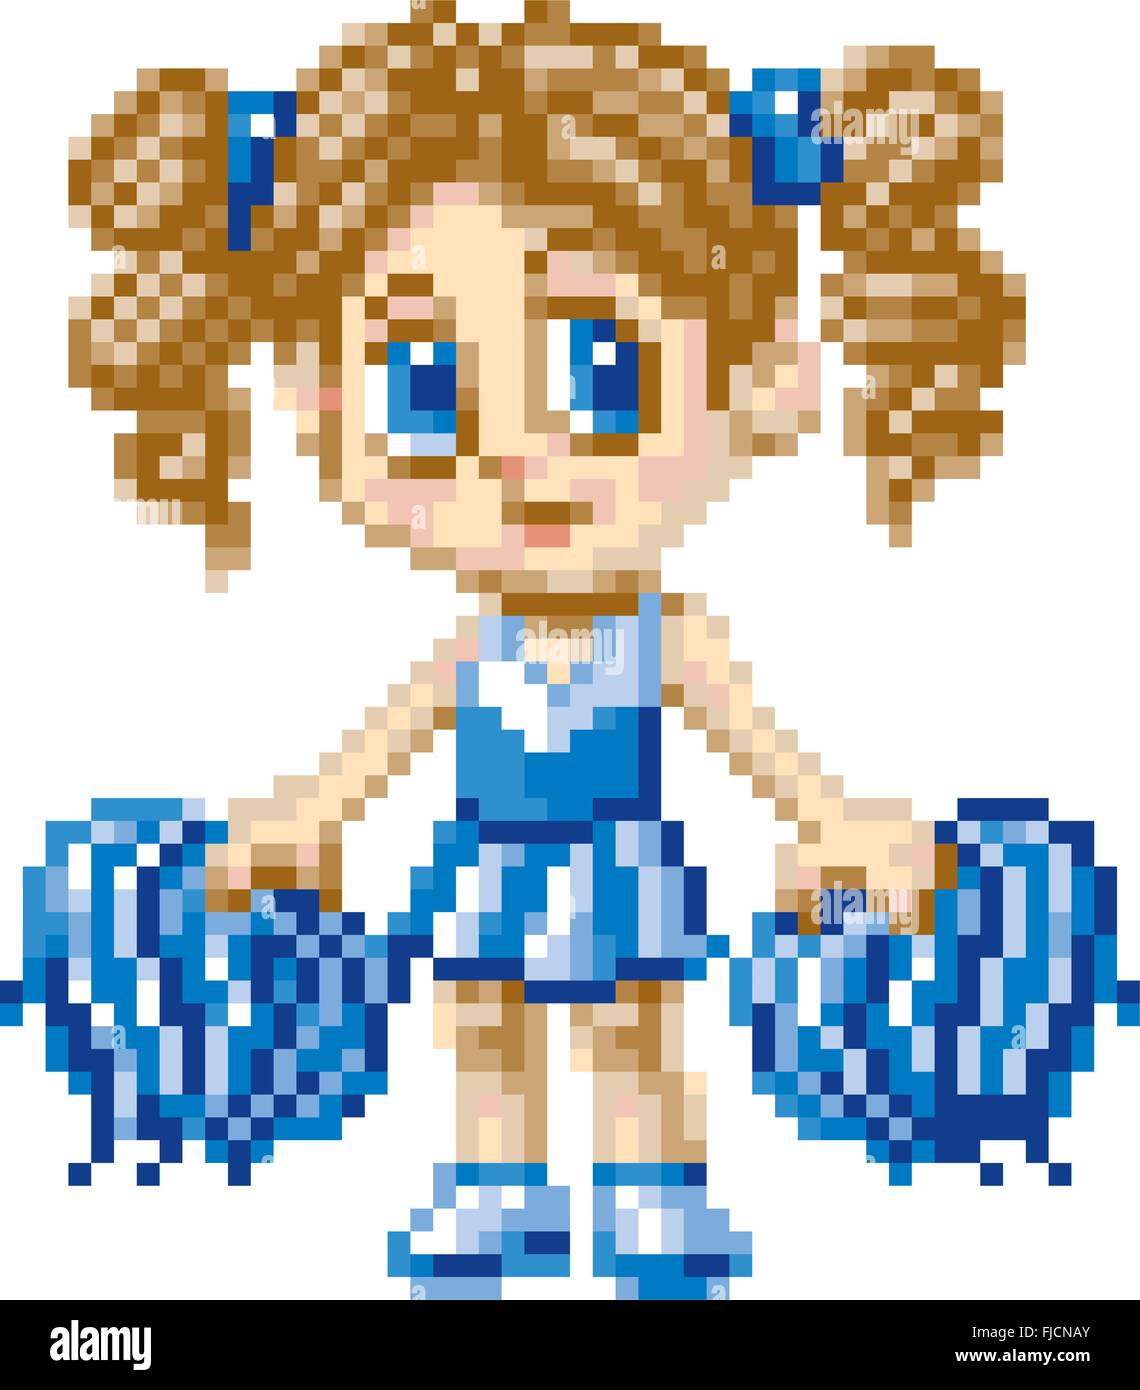 Un cheerleader girl illustré dans un style dessin animé manga ou d'anime, rendu comme pixel art (art vectoriel en blocs). Illustration de Vecteur